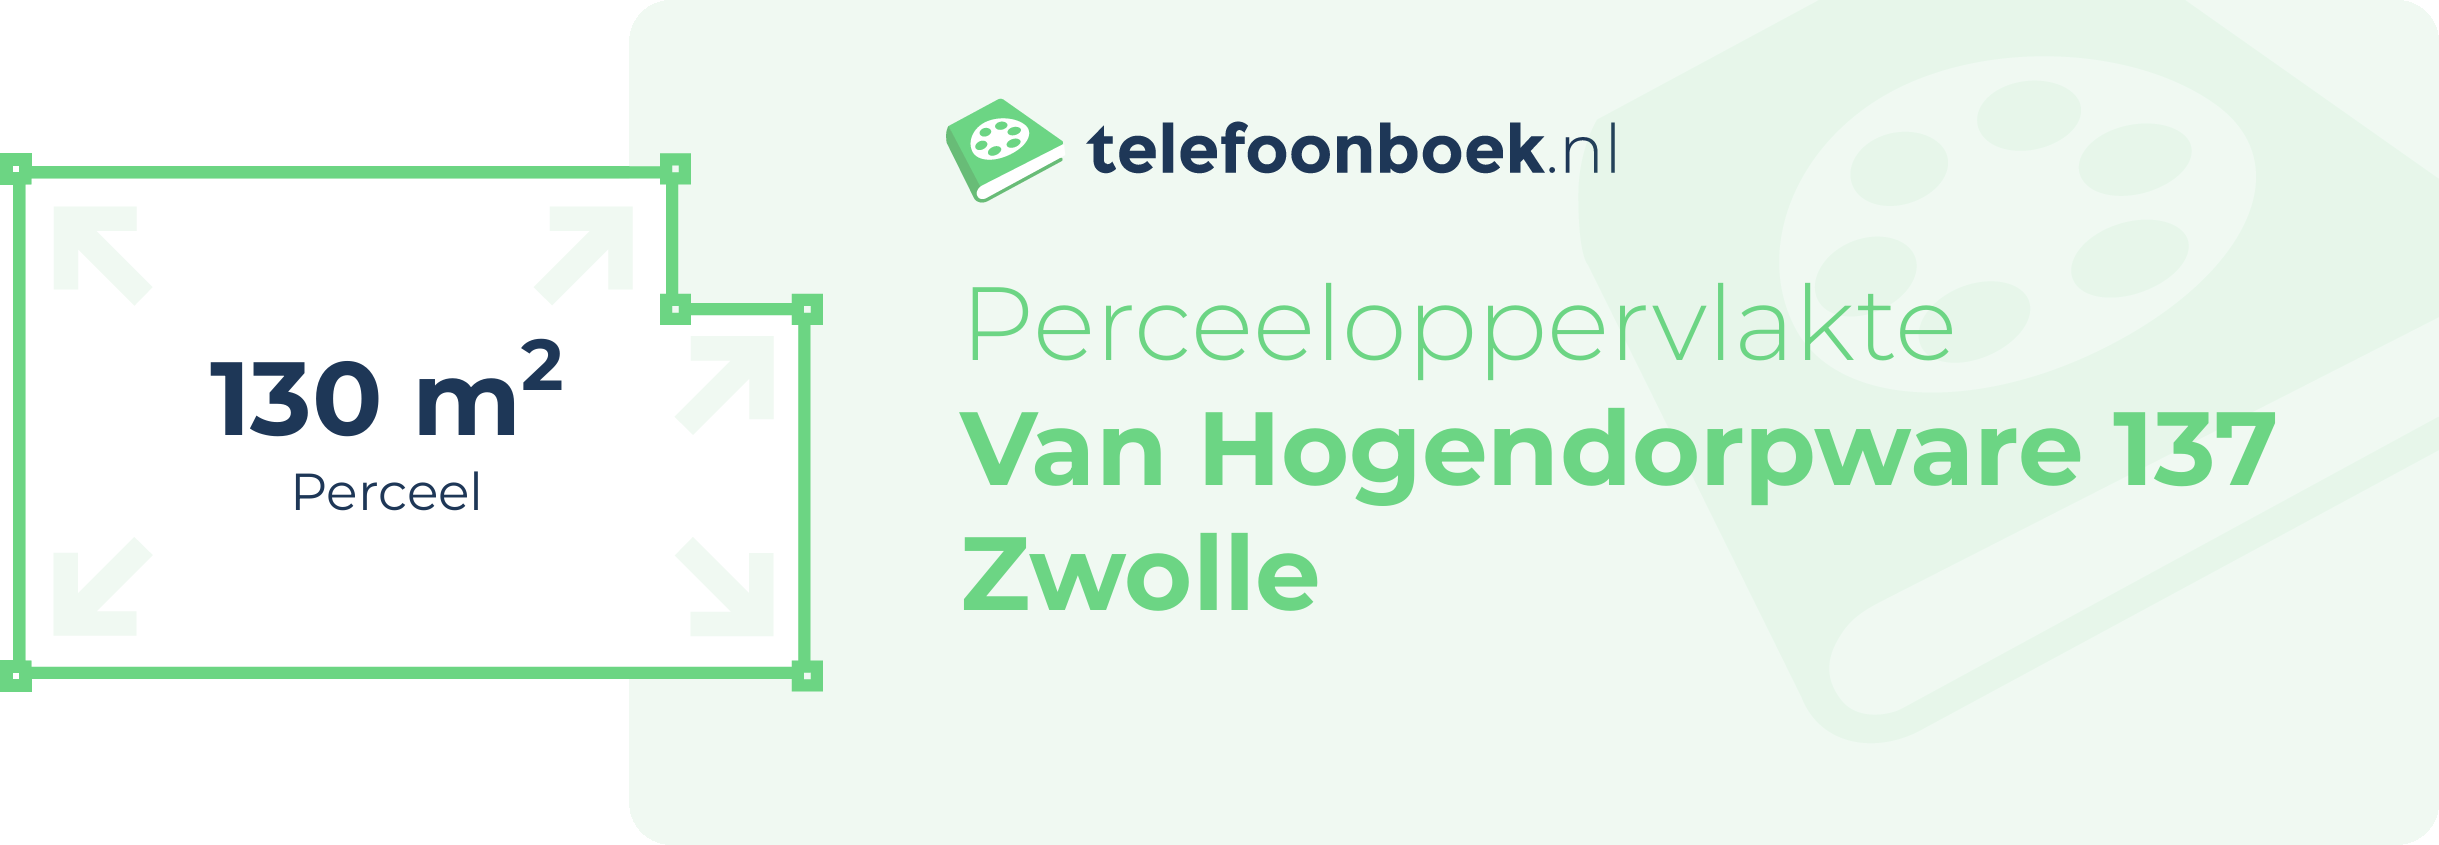 Perceeloppervlakte Van Hogendorpware 137 Zwolle